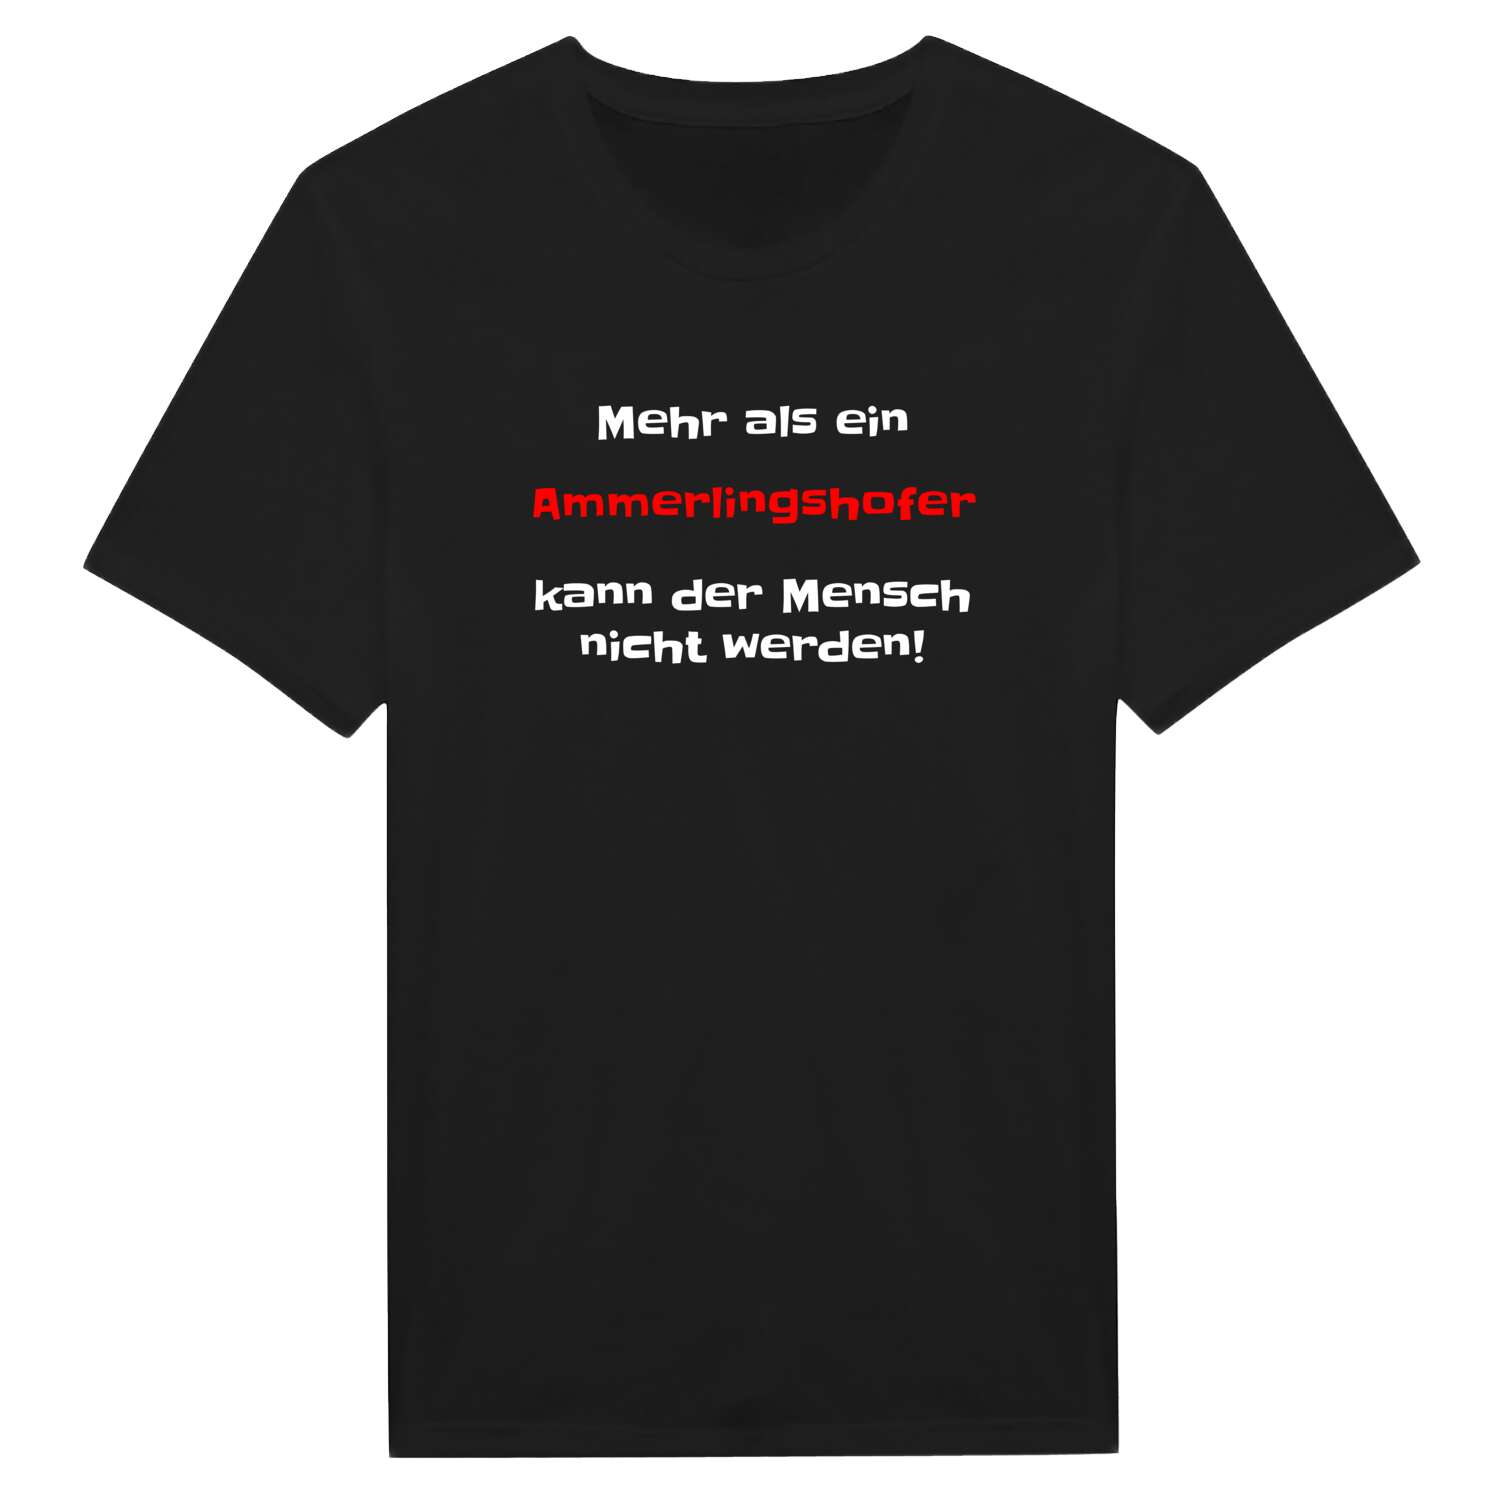 Ammerlingshof T-Shirt »Mehr als ein«